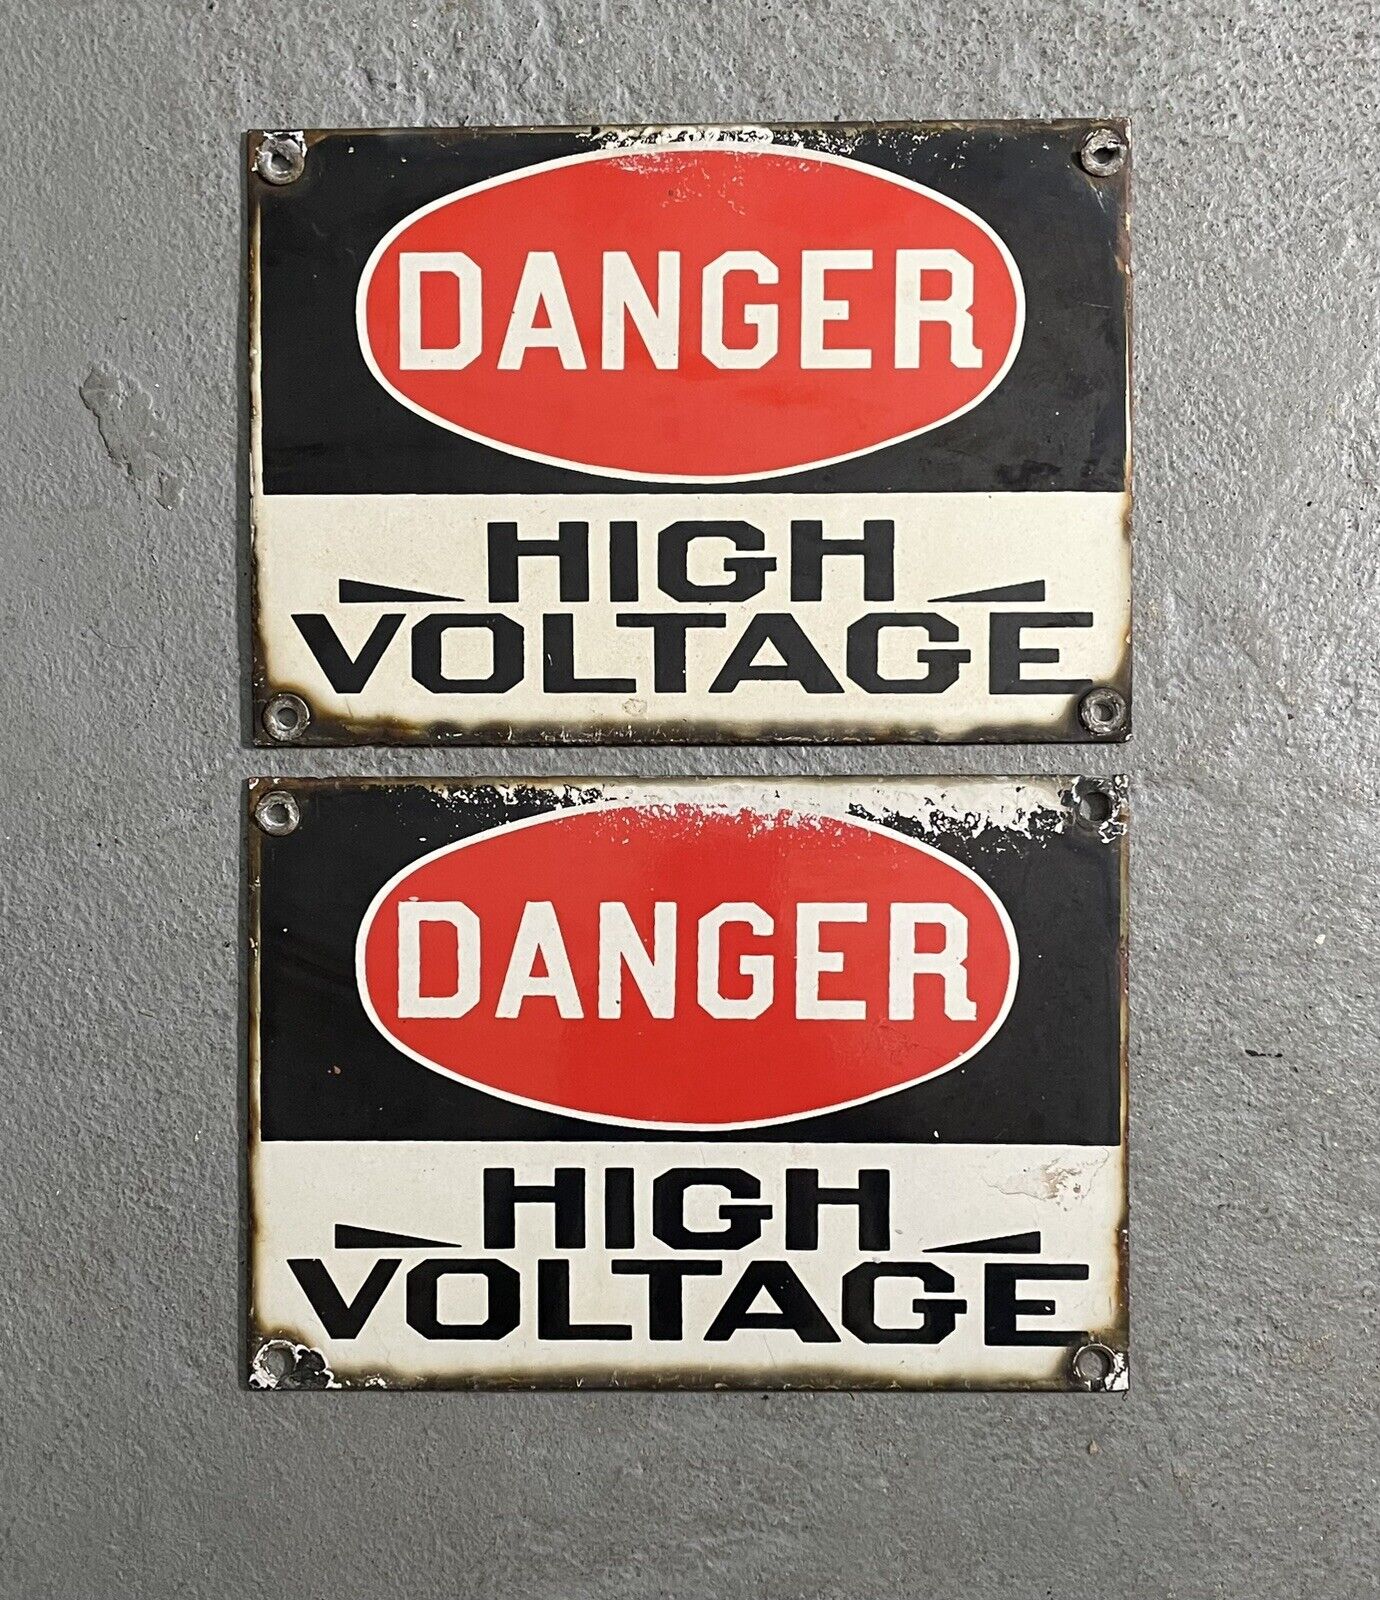 Vintage Danger High Voltage Porcelain Sign Lot 2 Industrial High Voltage Signs 